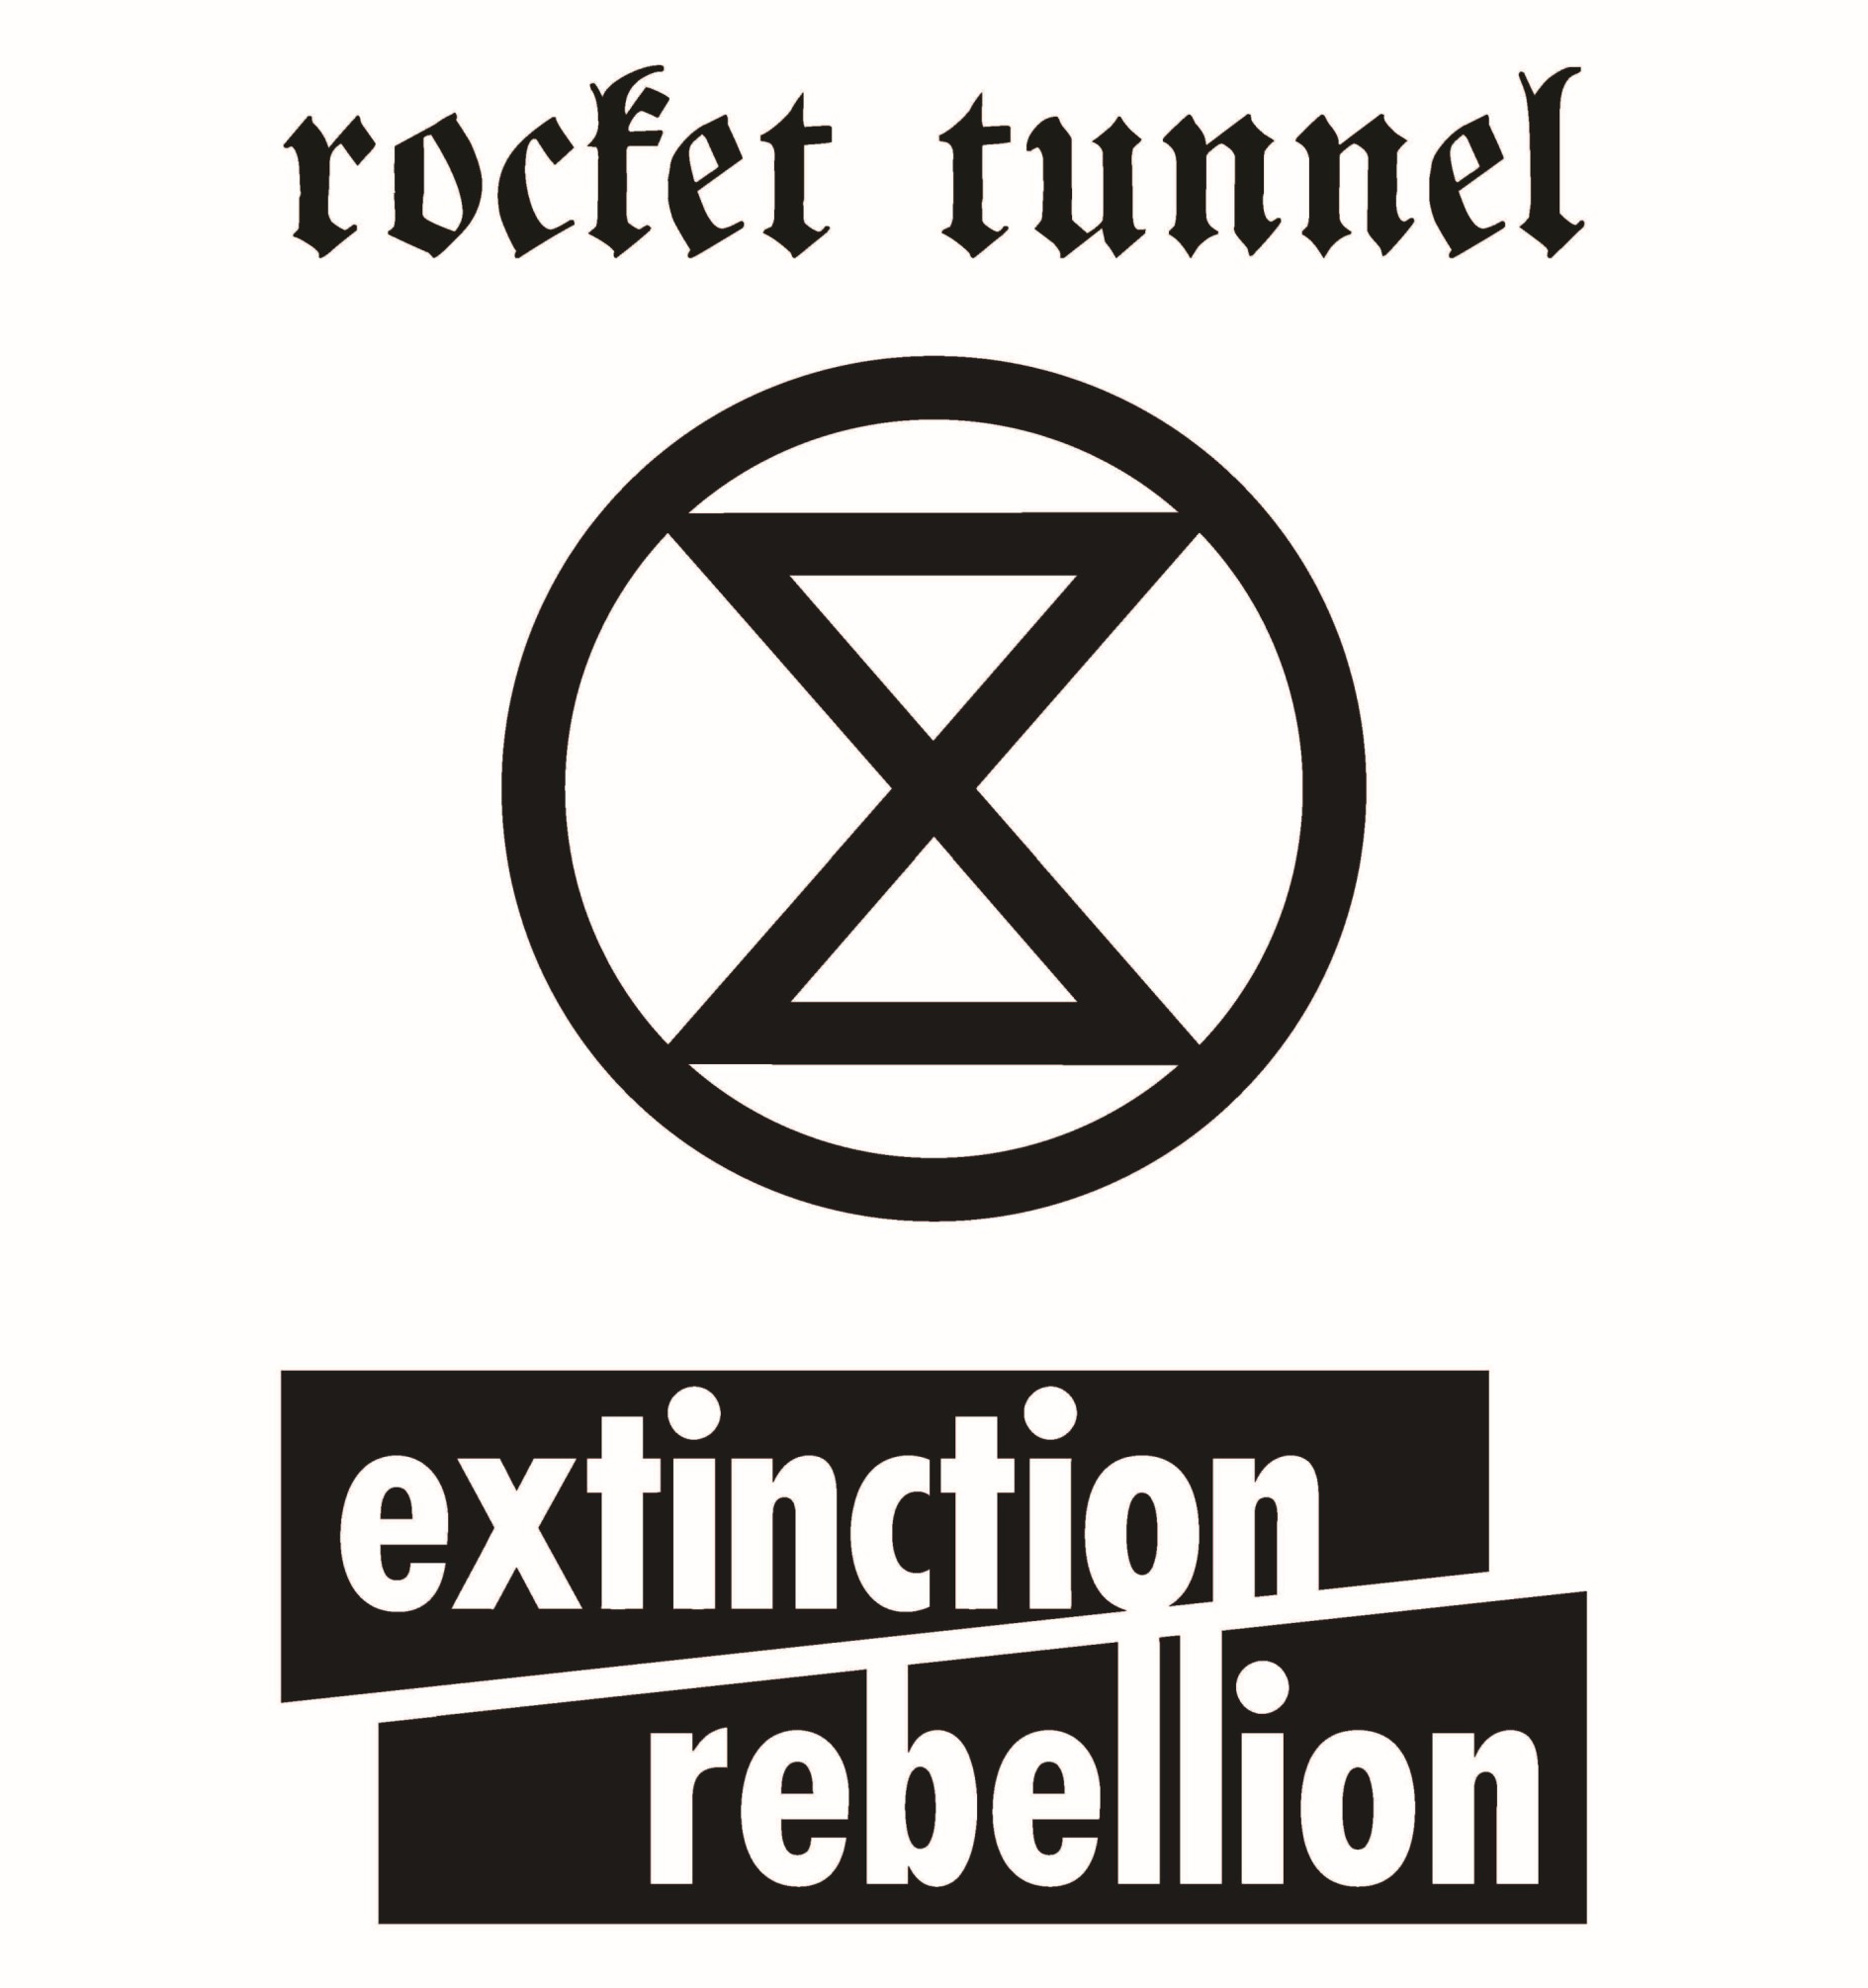 rocket tunnel extinction rebellion